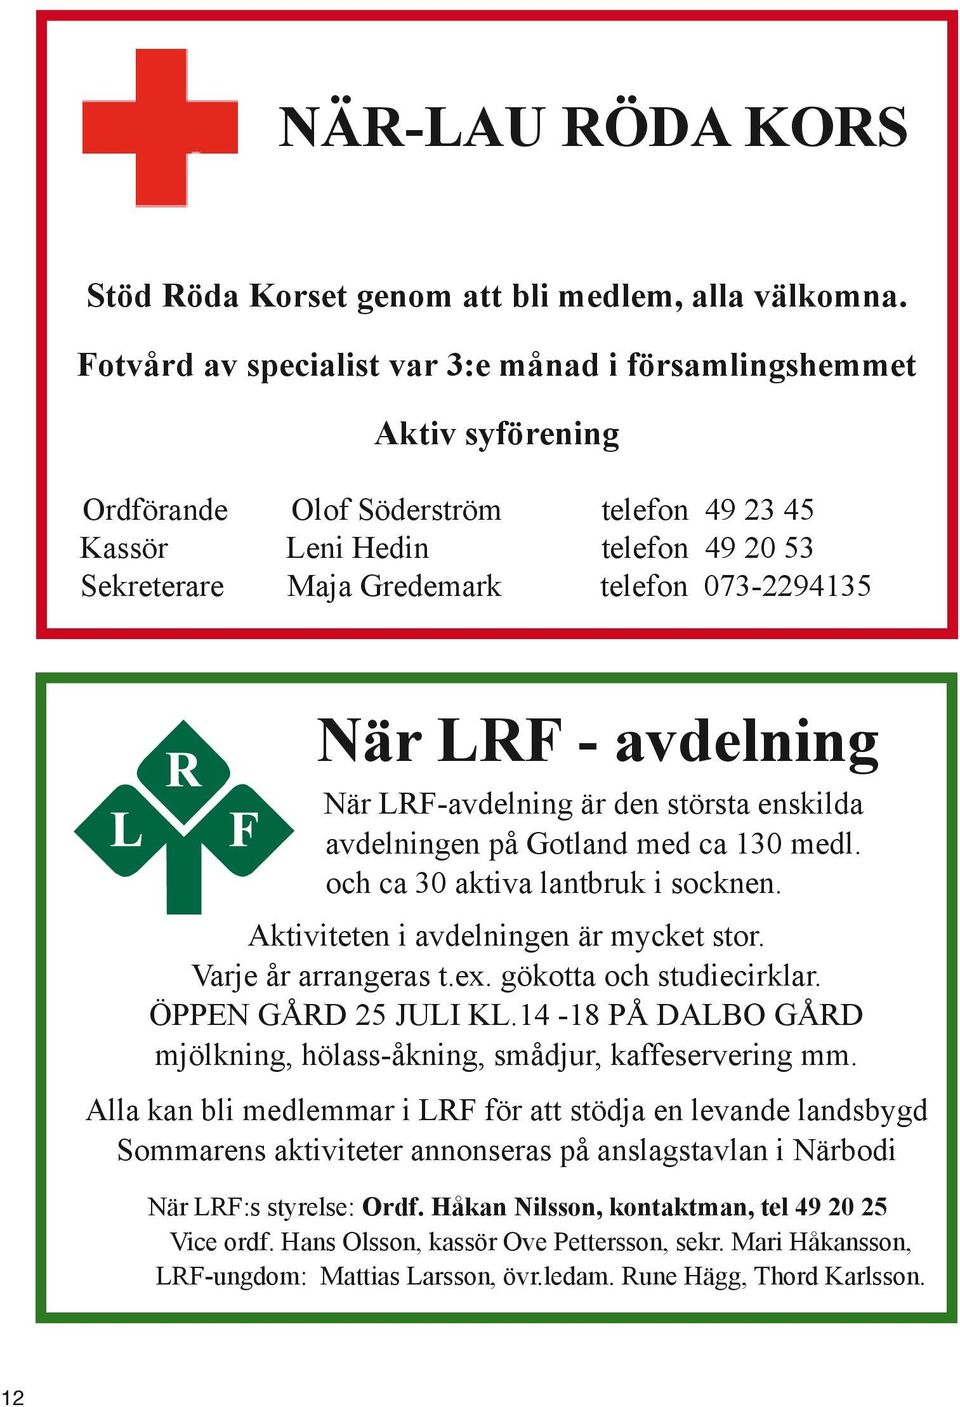 När LRF - avdelning När LRF-avdelning är den största enskilda avdelningen på Gotland med ca 130 medl. och ca 30 aktiva lantbruk i socknen. Aktiviteten i avdelningen är mycket stor.